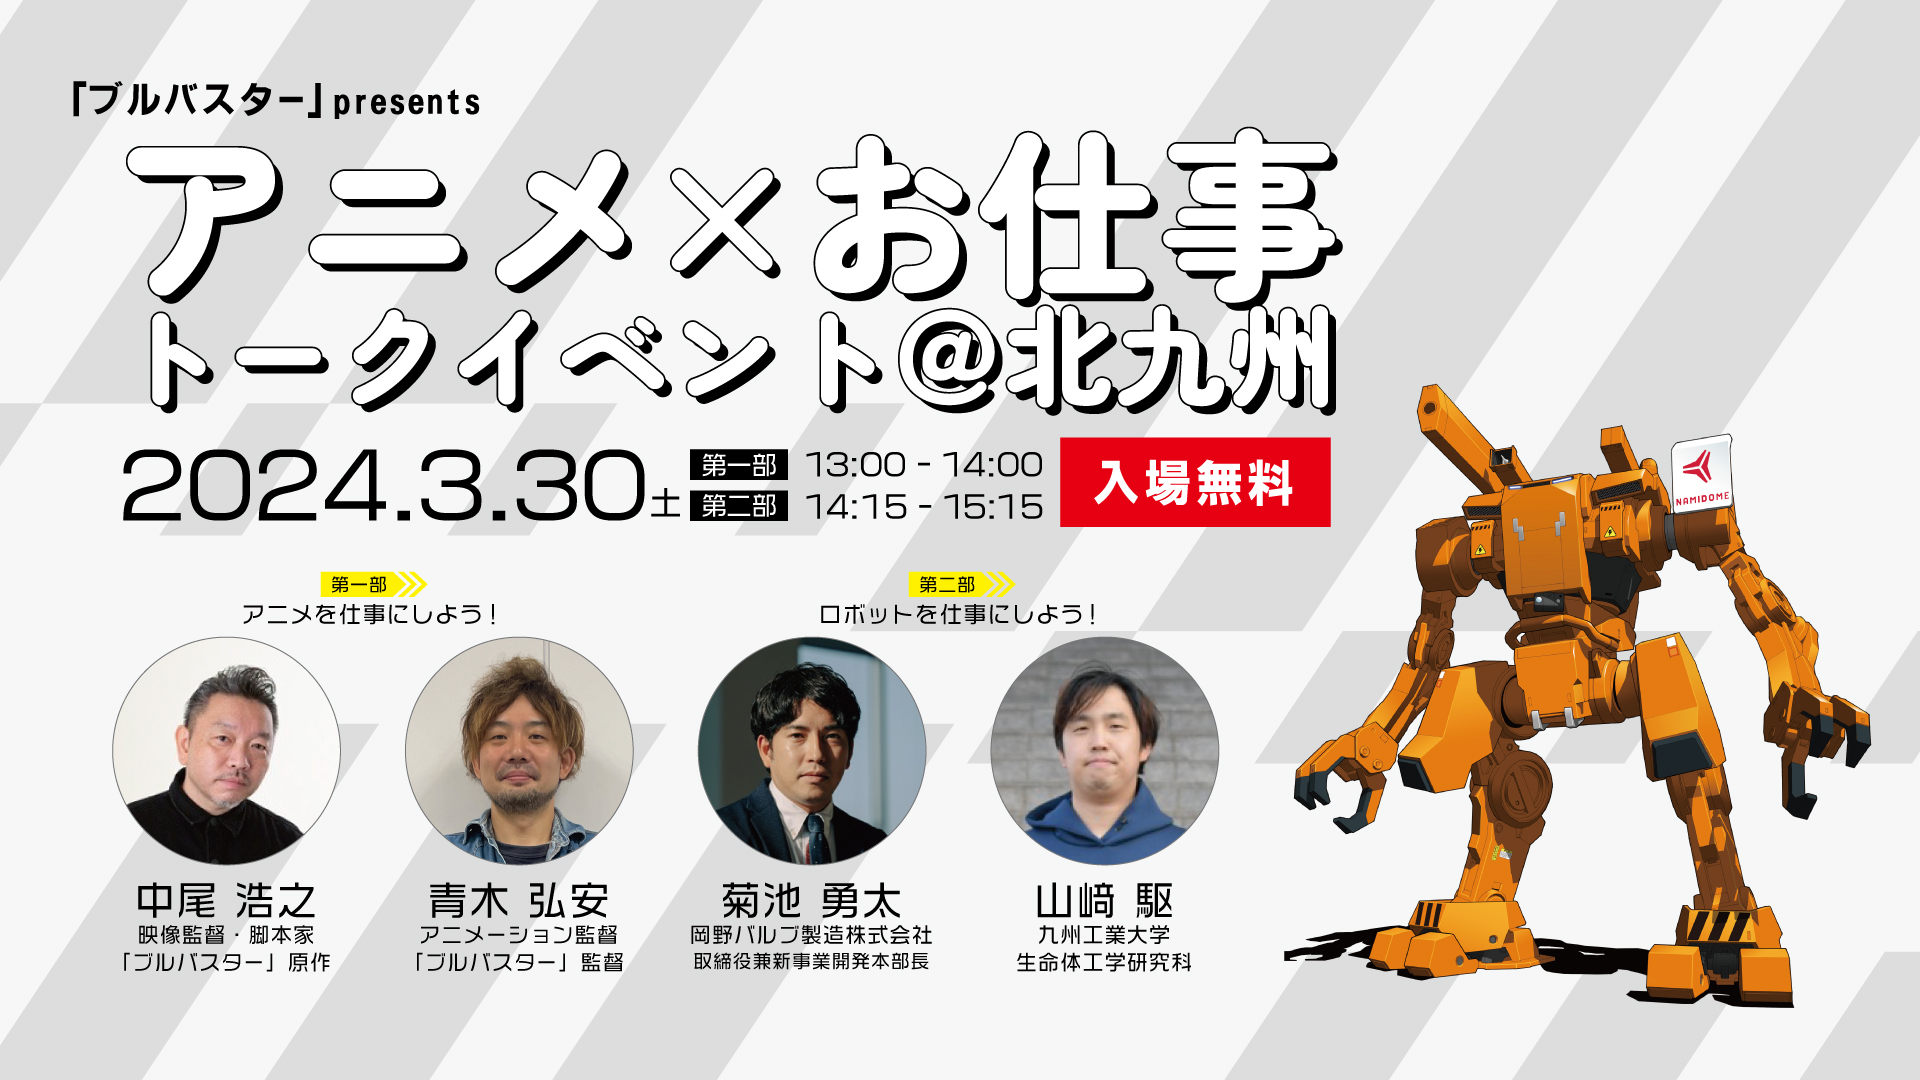 「ブルバスター」presents  アニメ × お仕事 トークイベントに中尾浩之が登壇。